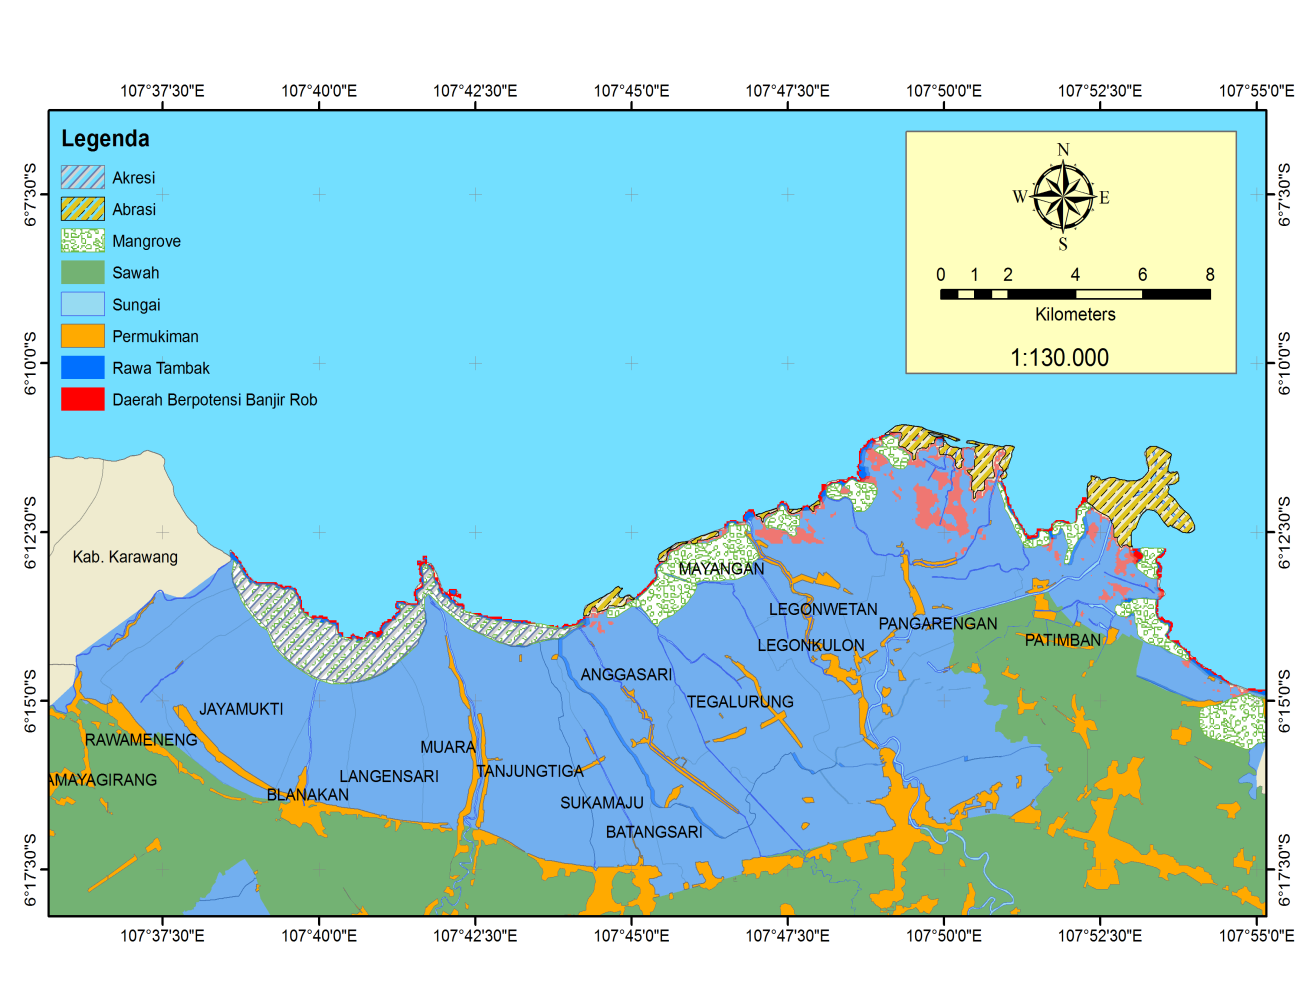 25 4.4 Peta Daerah Berpotensi Banjir Rob Dari Pasang Surut, Gelombang, dan Kenaikan Muka Air Laut Gambar 6 merupakan analisis daerah yang berpotensi terendam banjir rob karena 3 variabel yaitu pasang